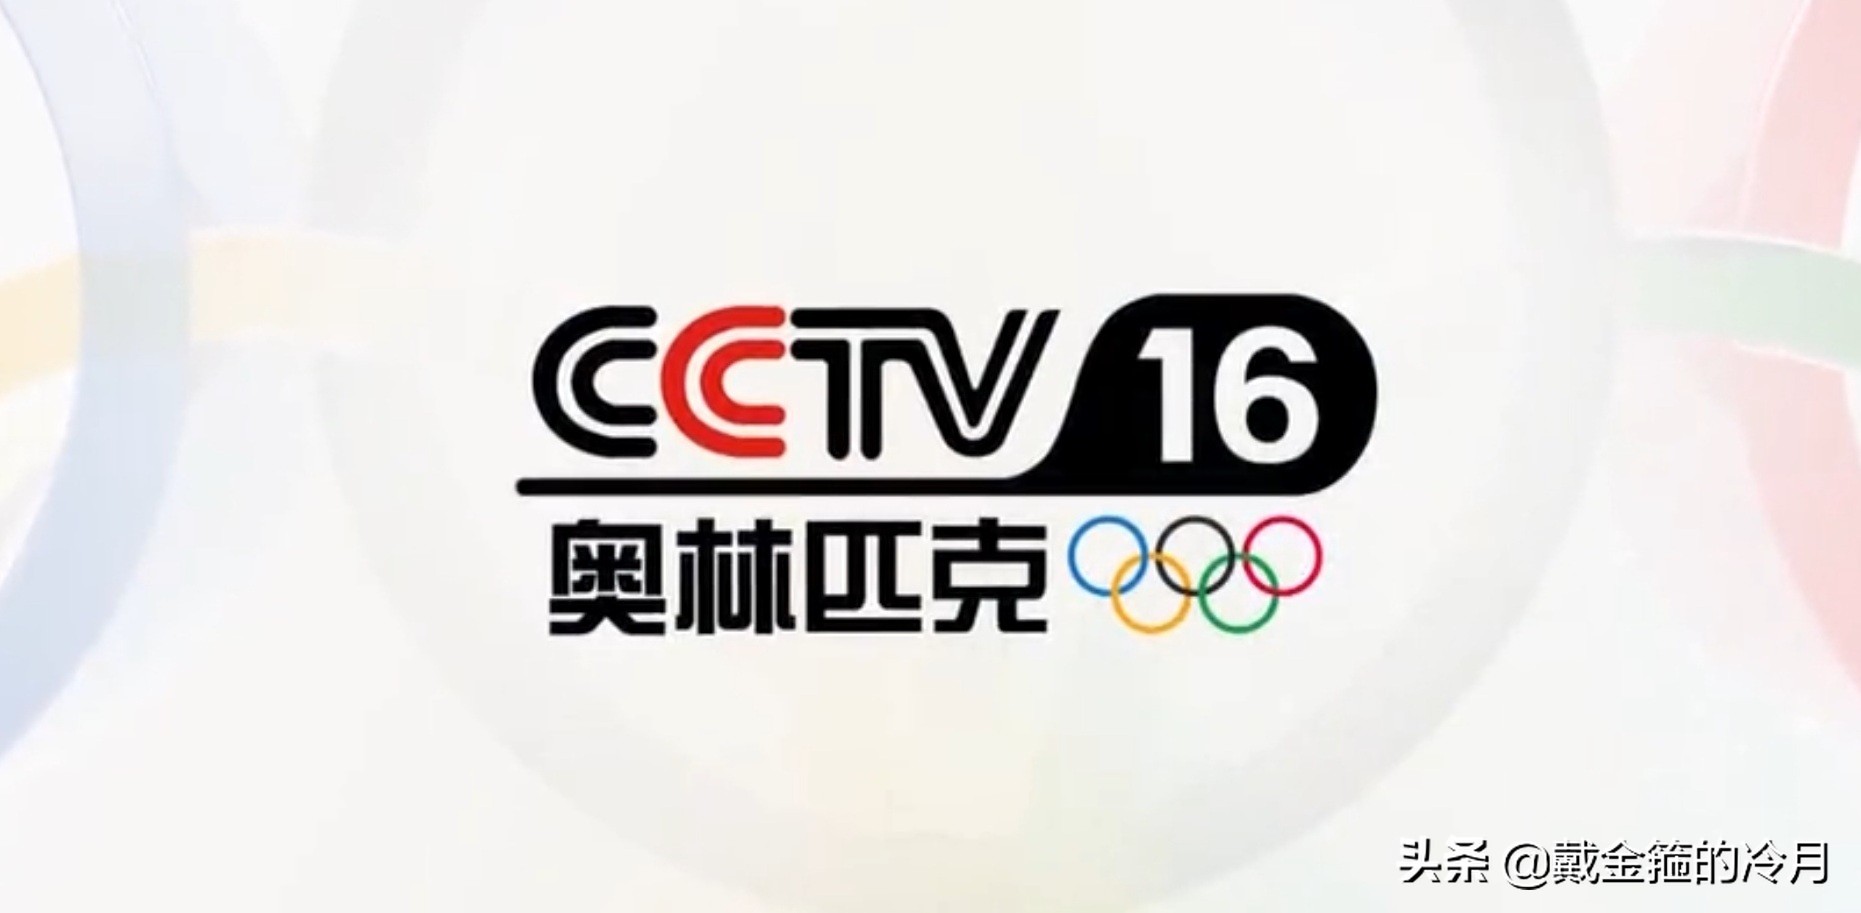 CCTV5更名为奥运频道（CCTV16奥林匹克频道开播，央视体育类频道增至6个）